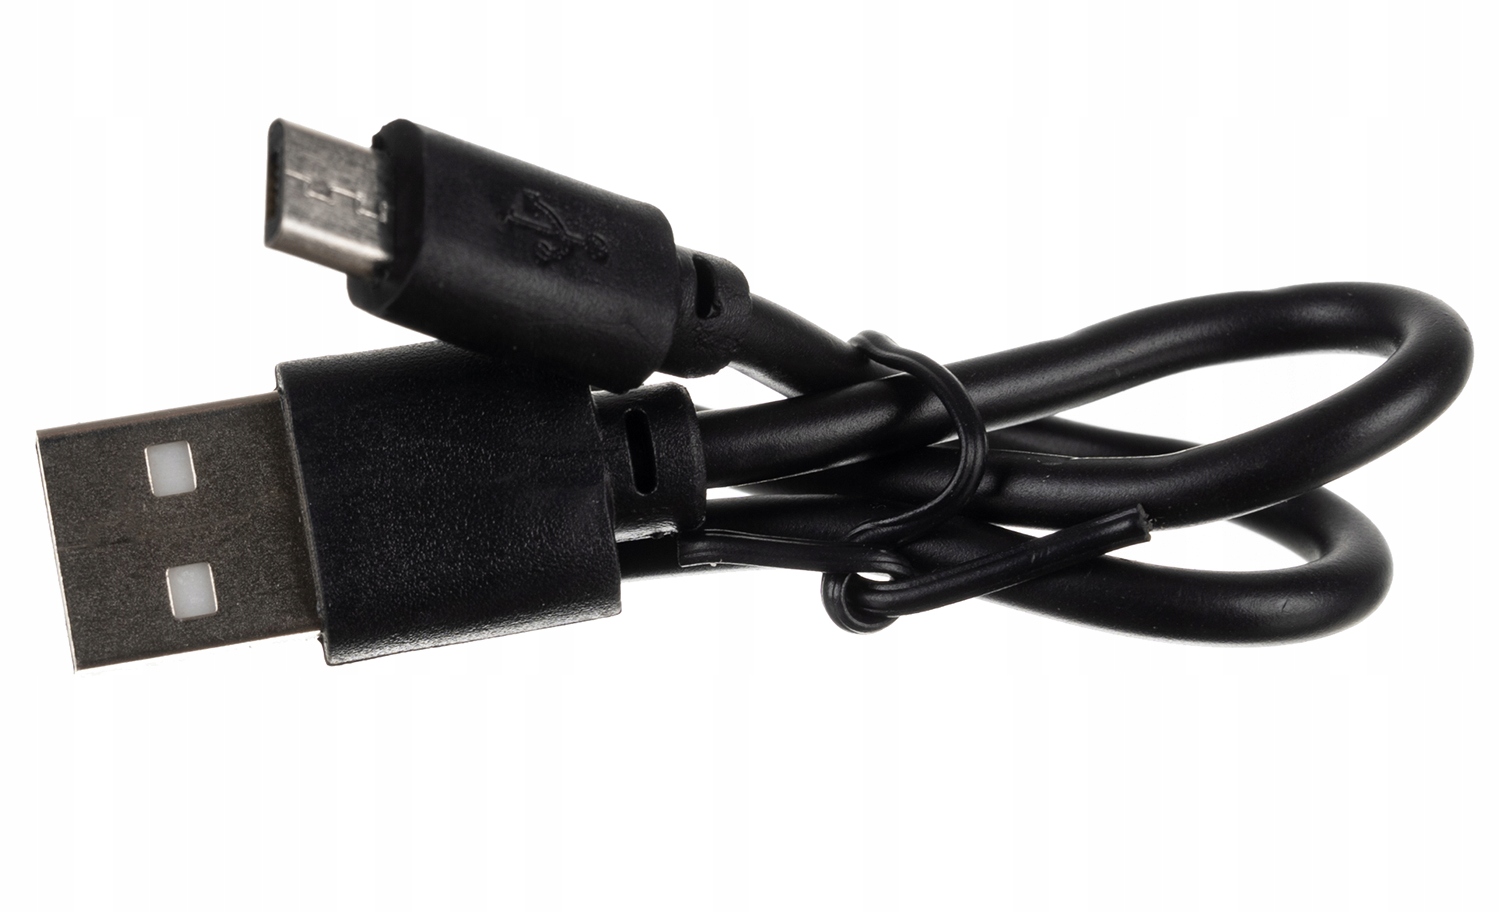 Čelovka Strong COB LED Čelovka 4v1 pro USB Jiná značka